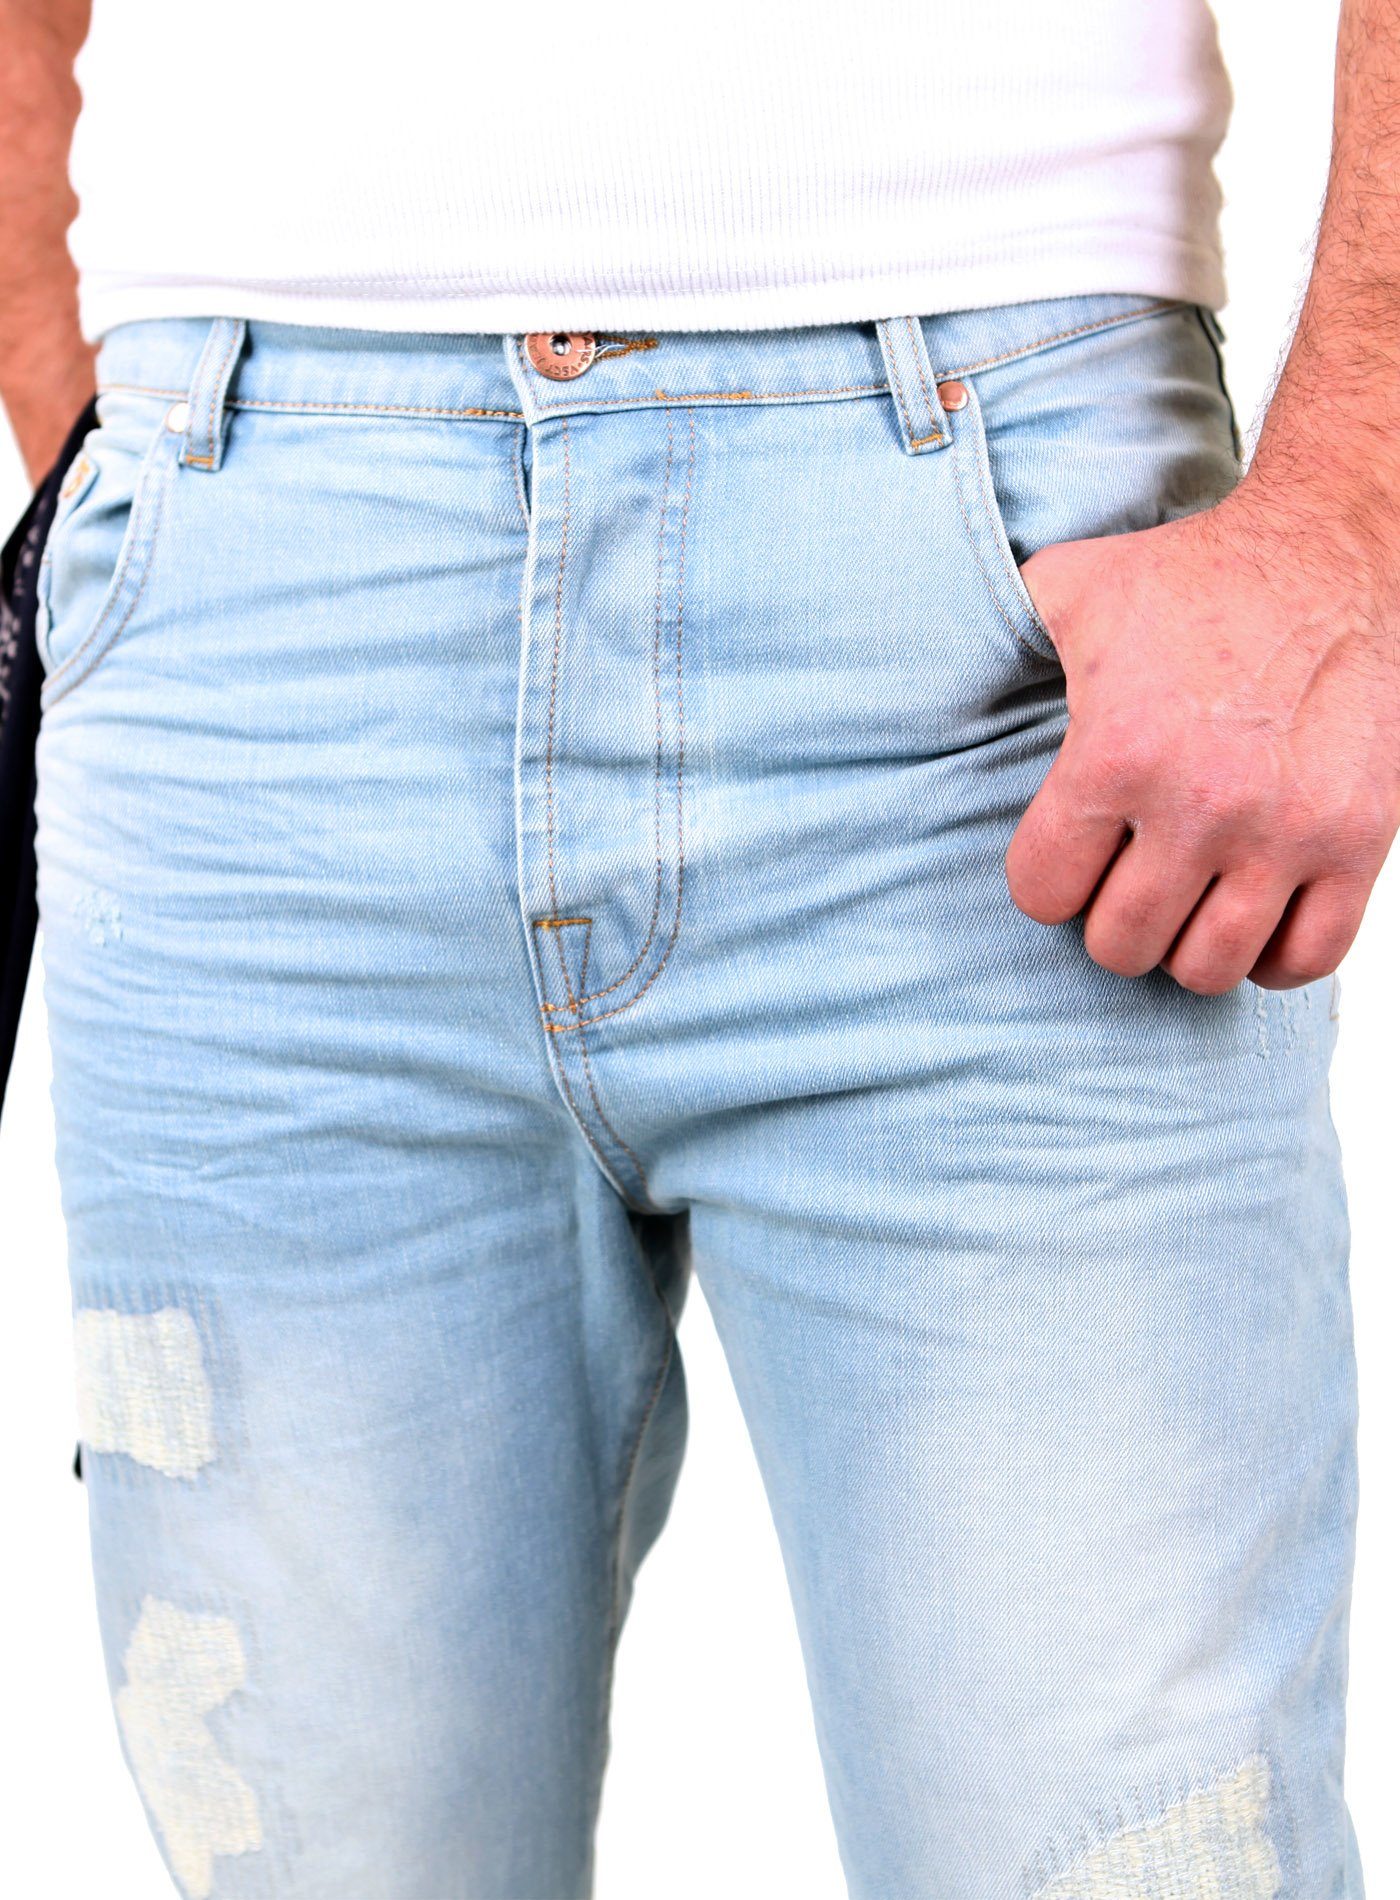 VSCT VSCT Bleached Cuffed Jeans Destroyed Fit Vintage V-5641223 Noah Slim Herren Used Look Männer-Hose Jeans Destroyed-Jeans